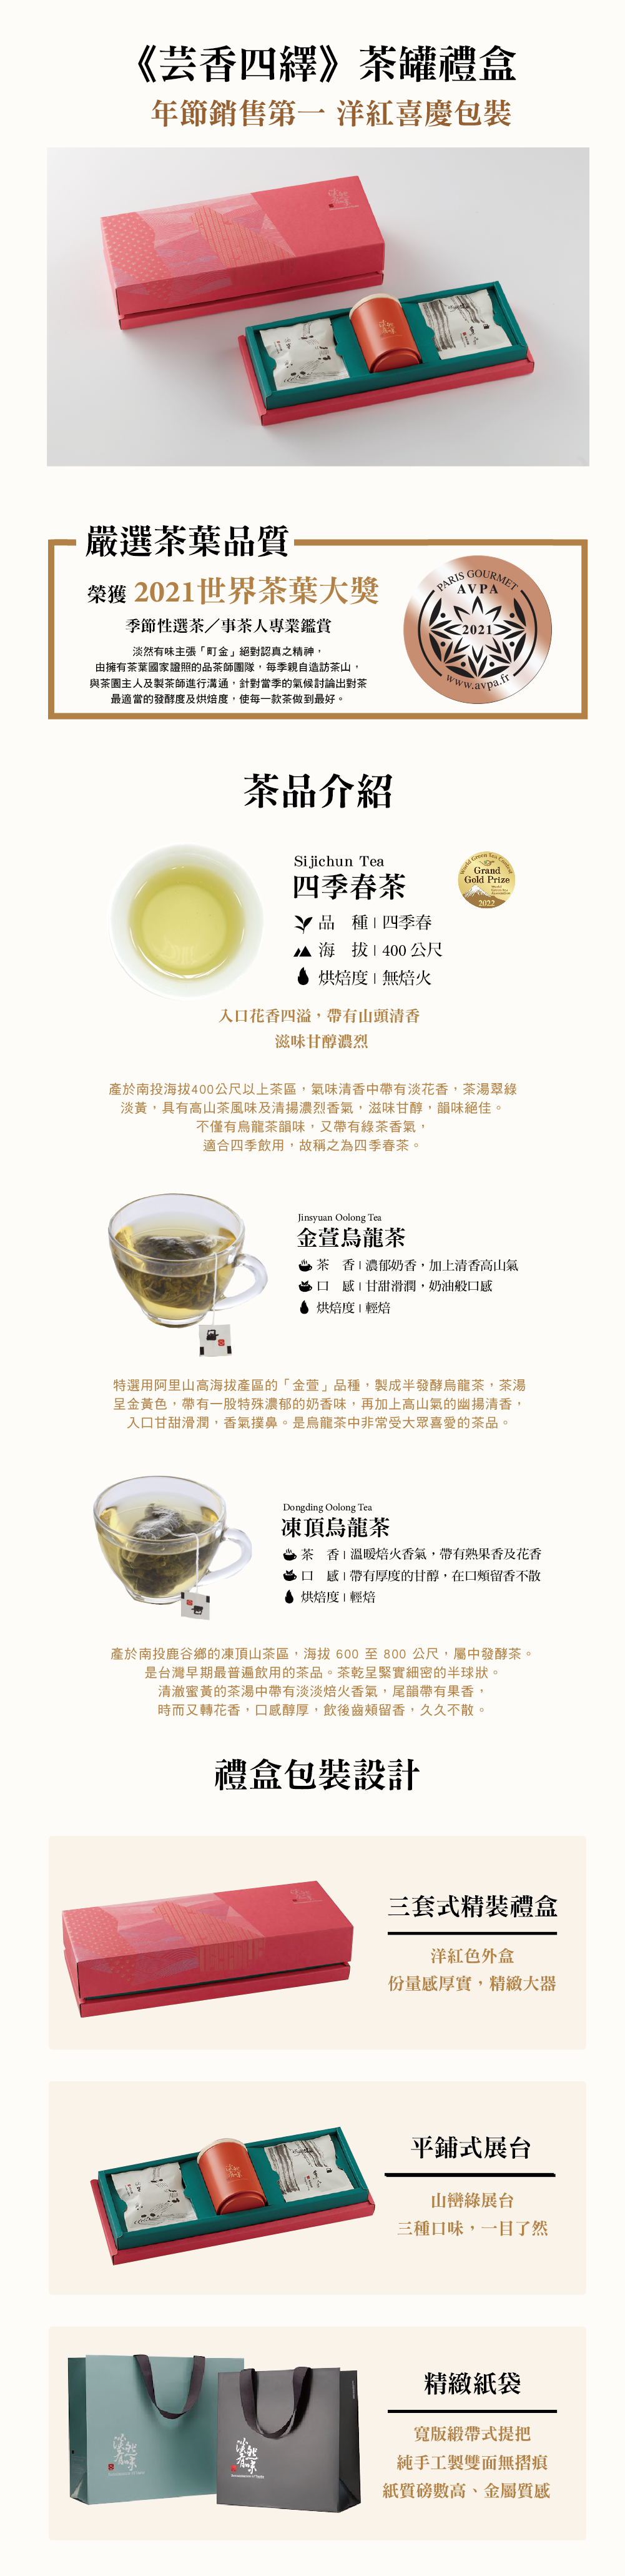 芸香四繹》典茶禮盒茶罐+茶包款- 淡然有味Danran-tea